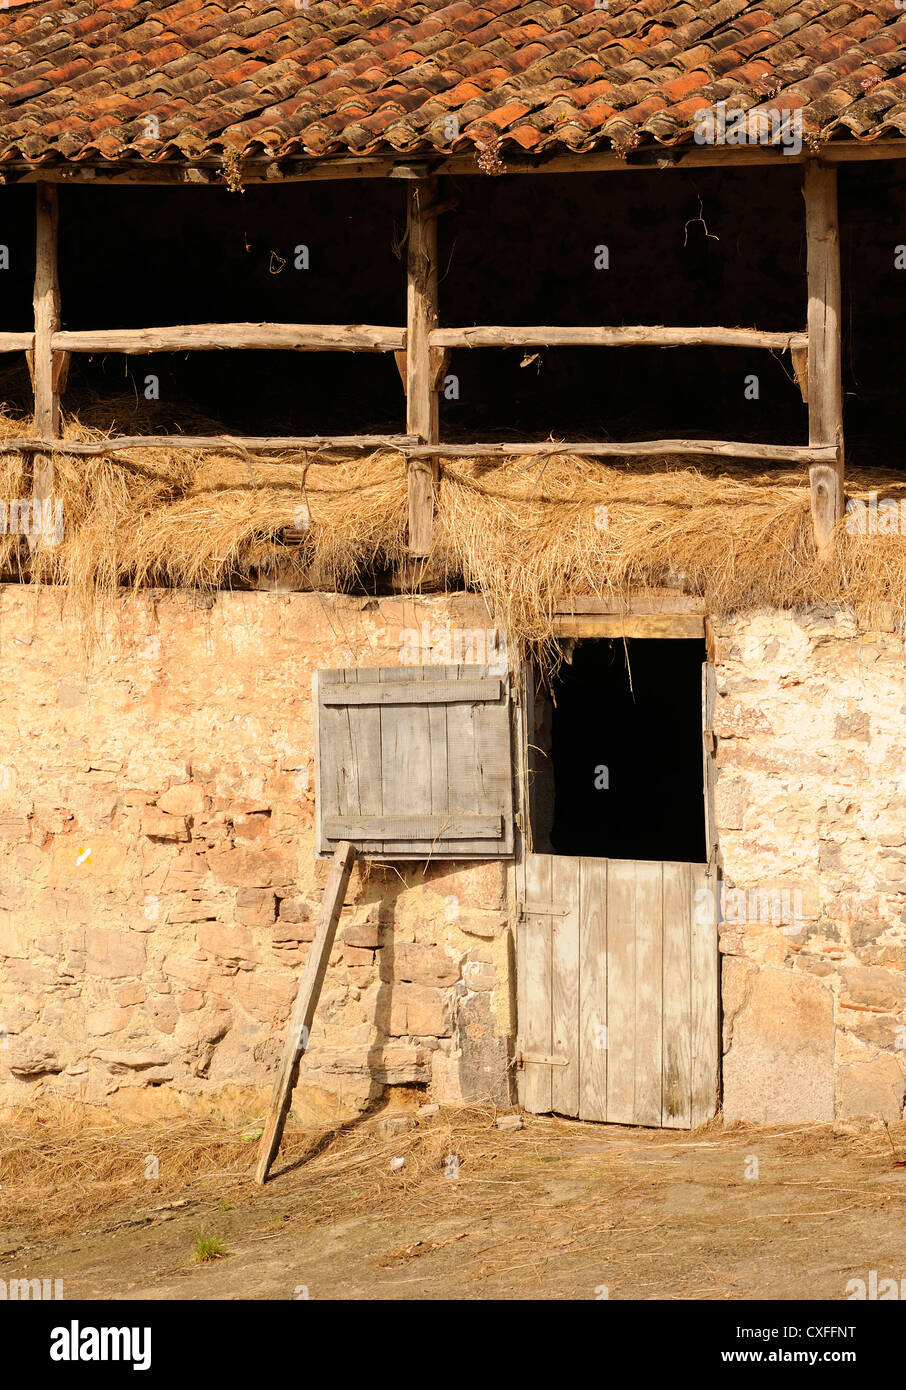 Une grange en pierre avec un toit en tuiles, grenier à foin, et une porte de l'écurie. Libardon Colunga, Espagne. Banque D'Images